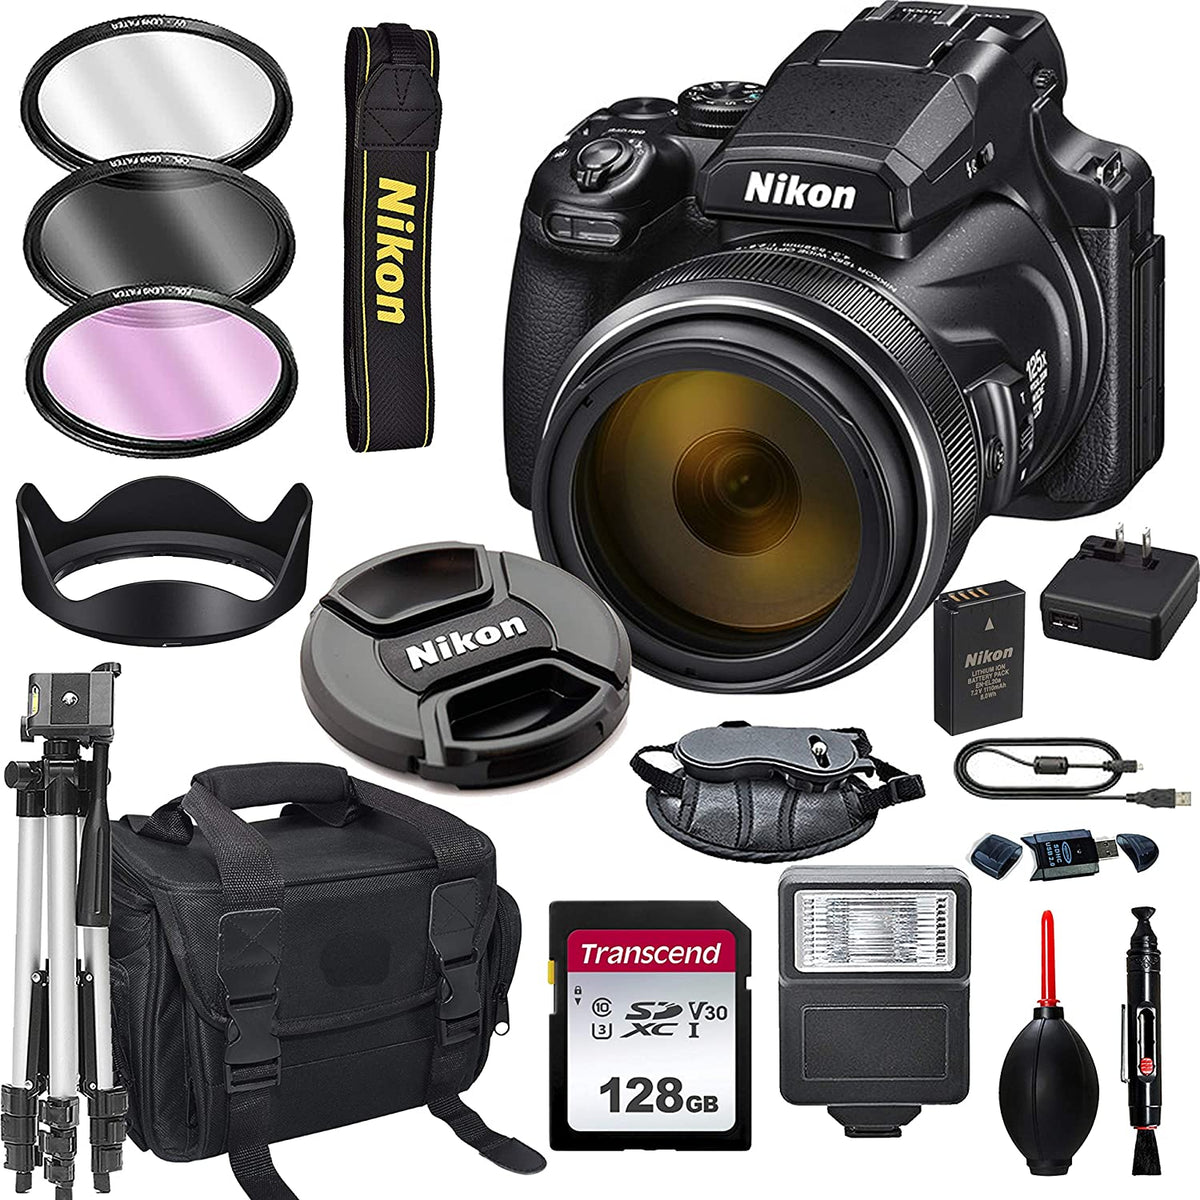 Nikon COOLPIX P1000 16.7 Digital Camera 128GB Card, Tripod, Flash 